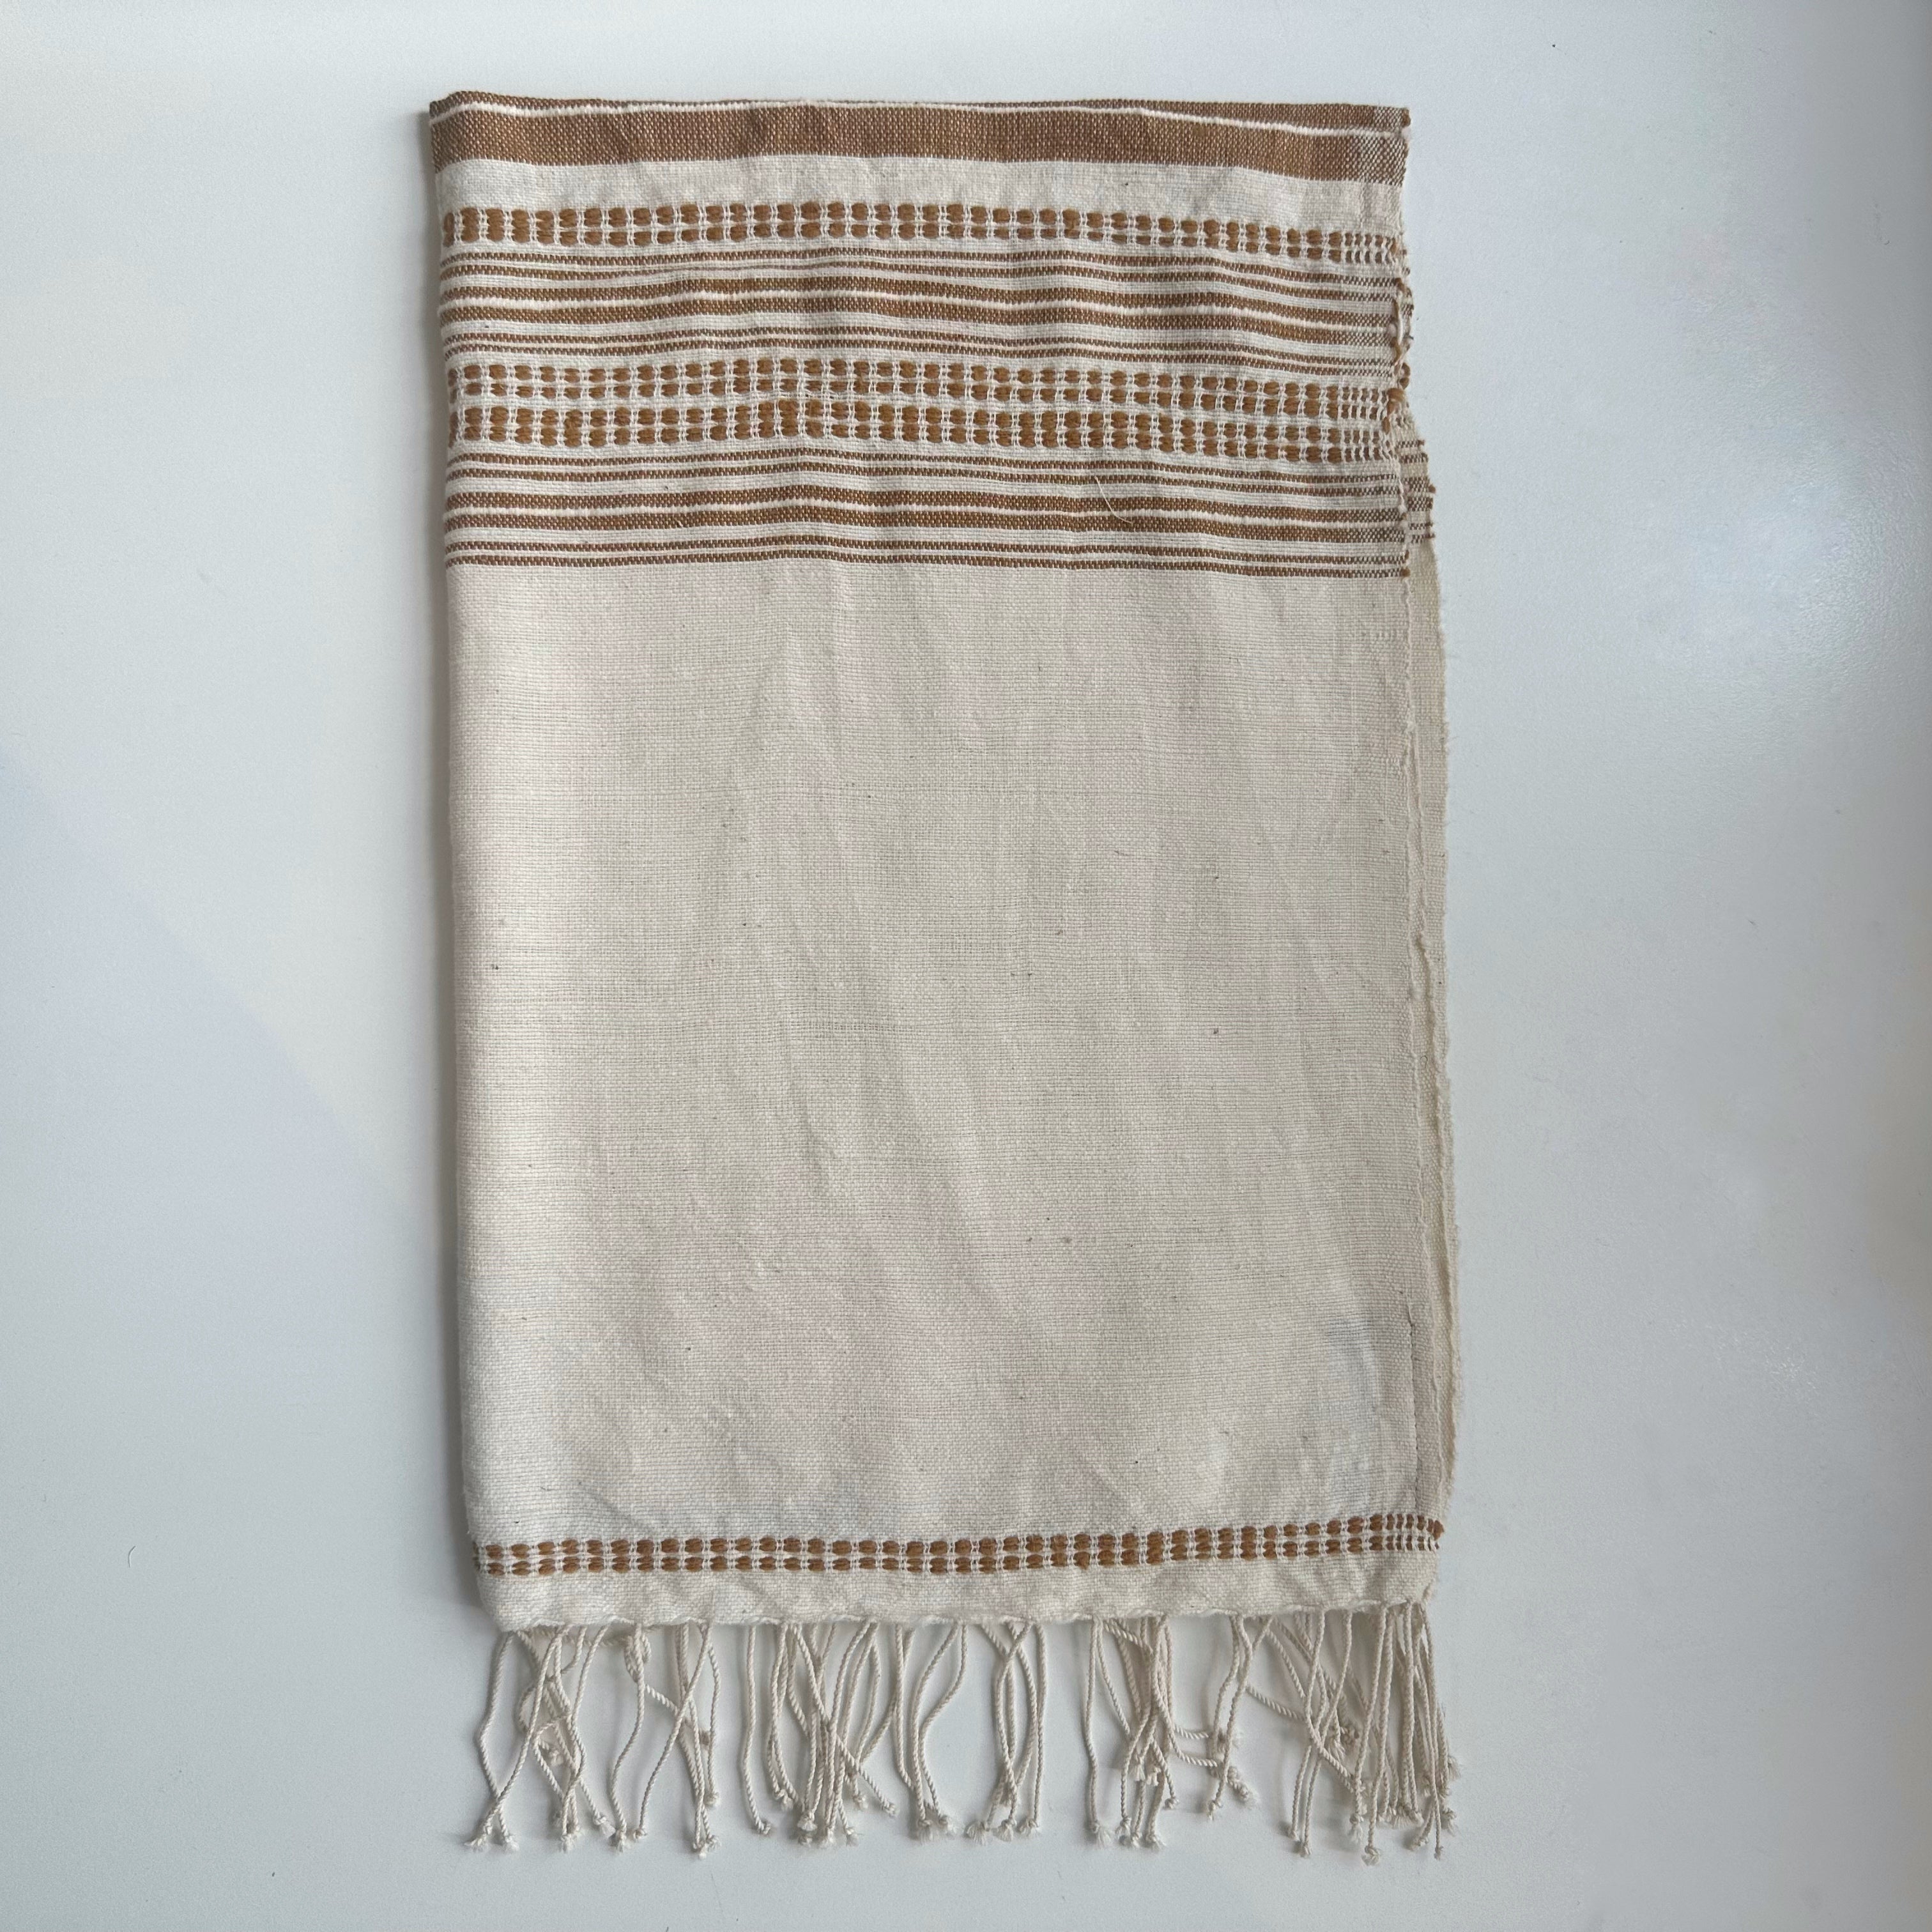 Ethiopian Handwoven Cotton Hand towels